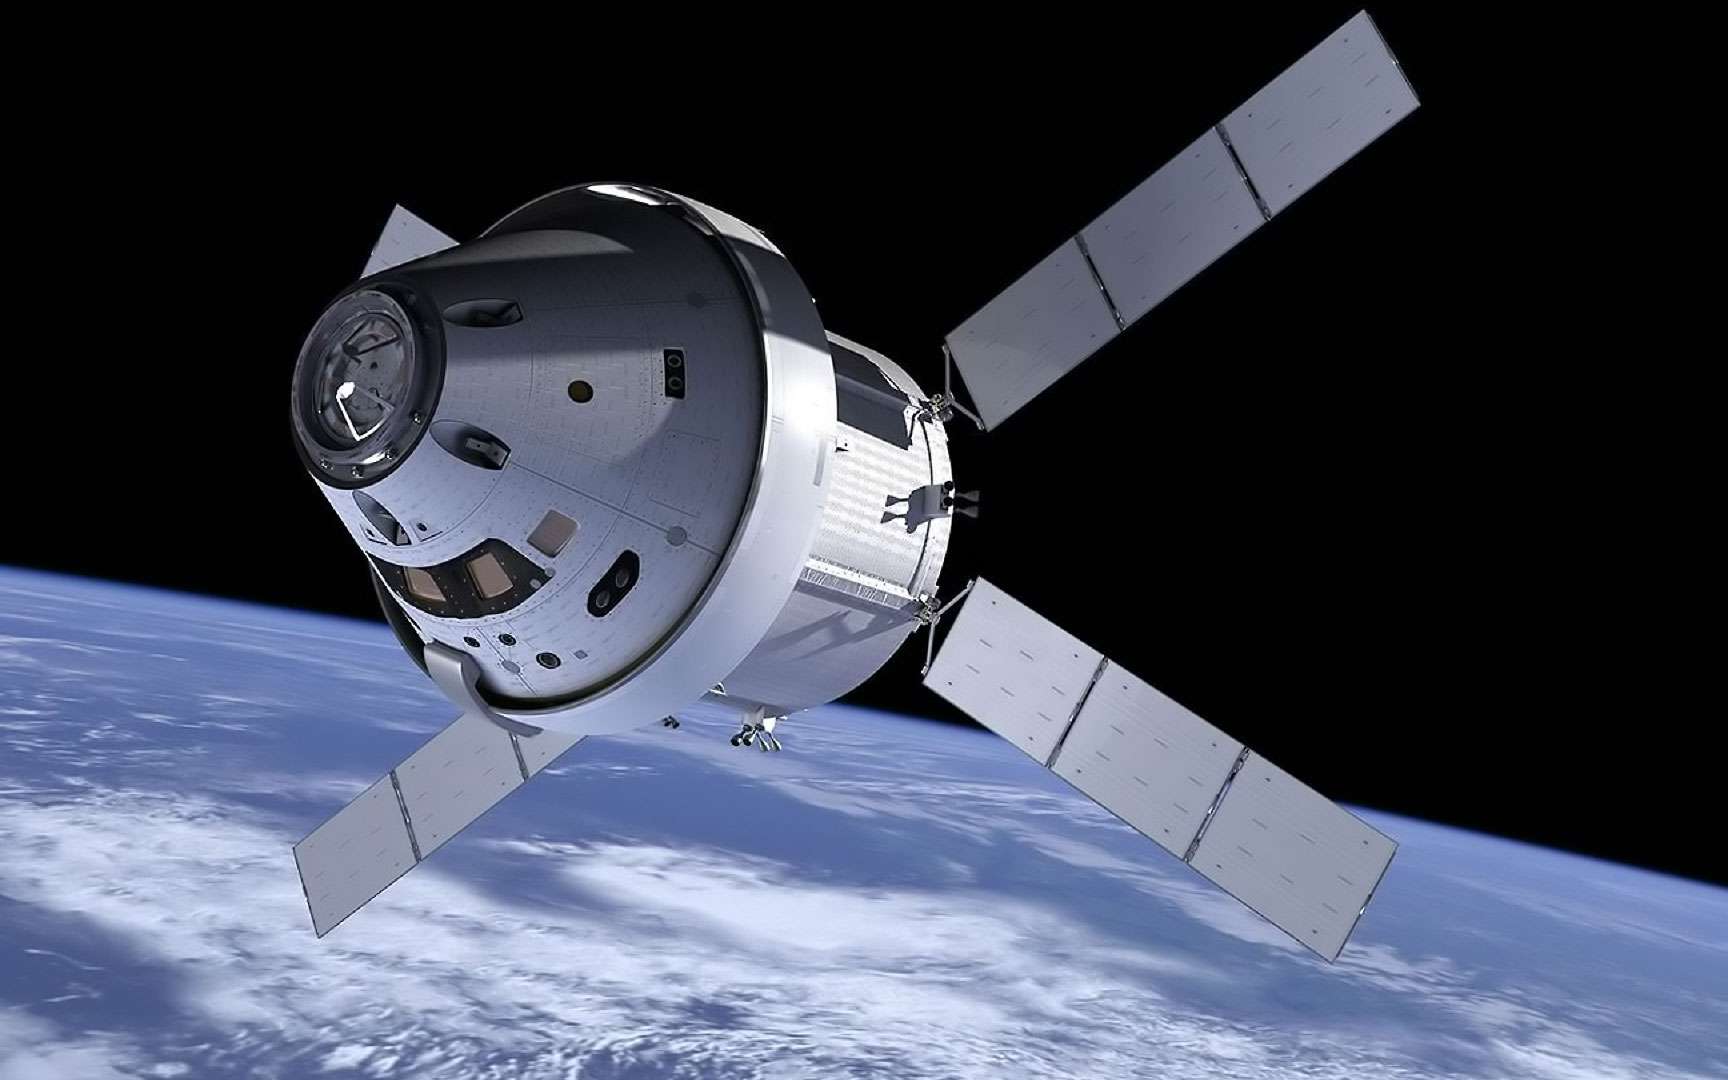 Comment mettre un satellite en orbite autour de la Terre ?